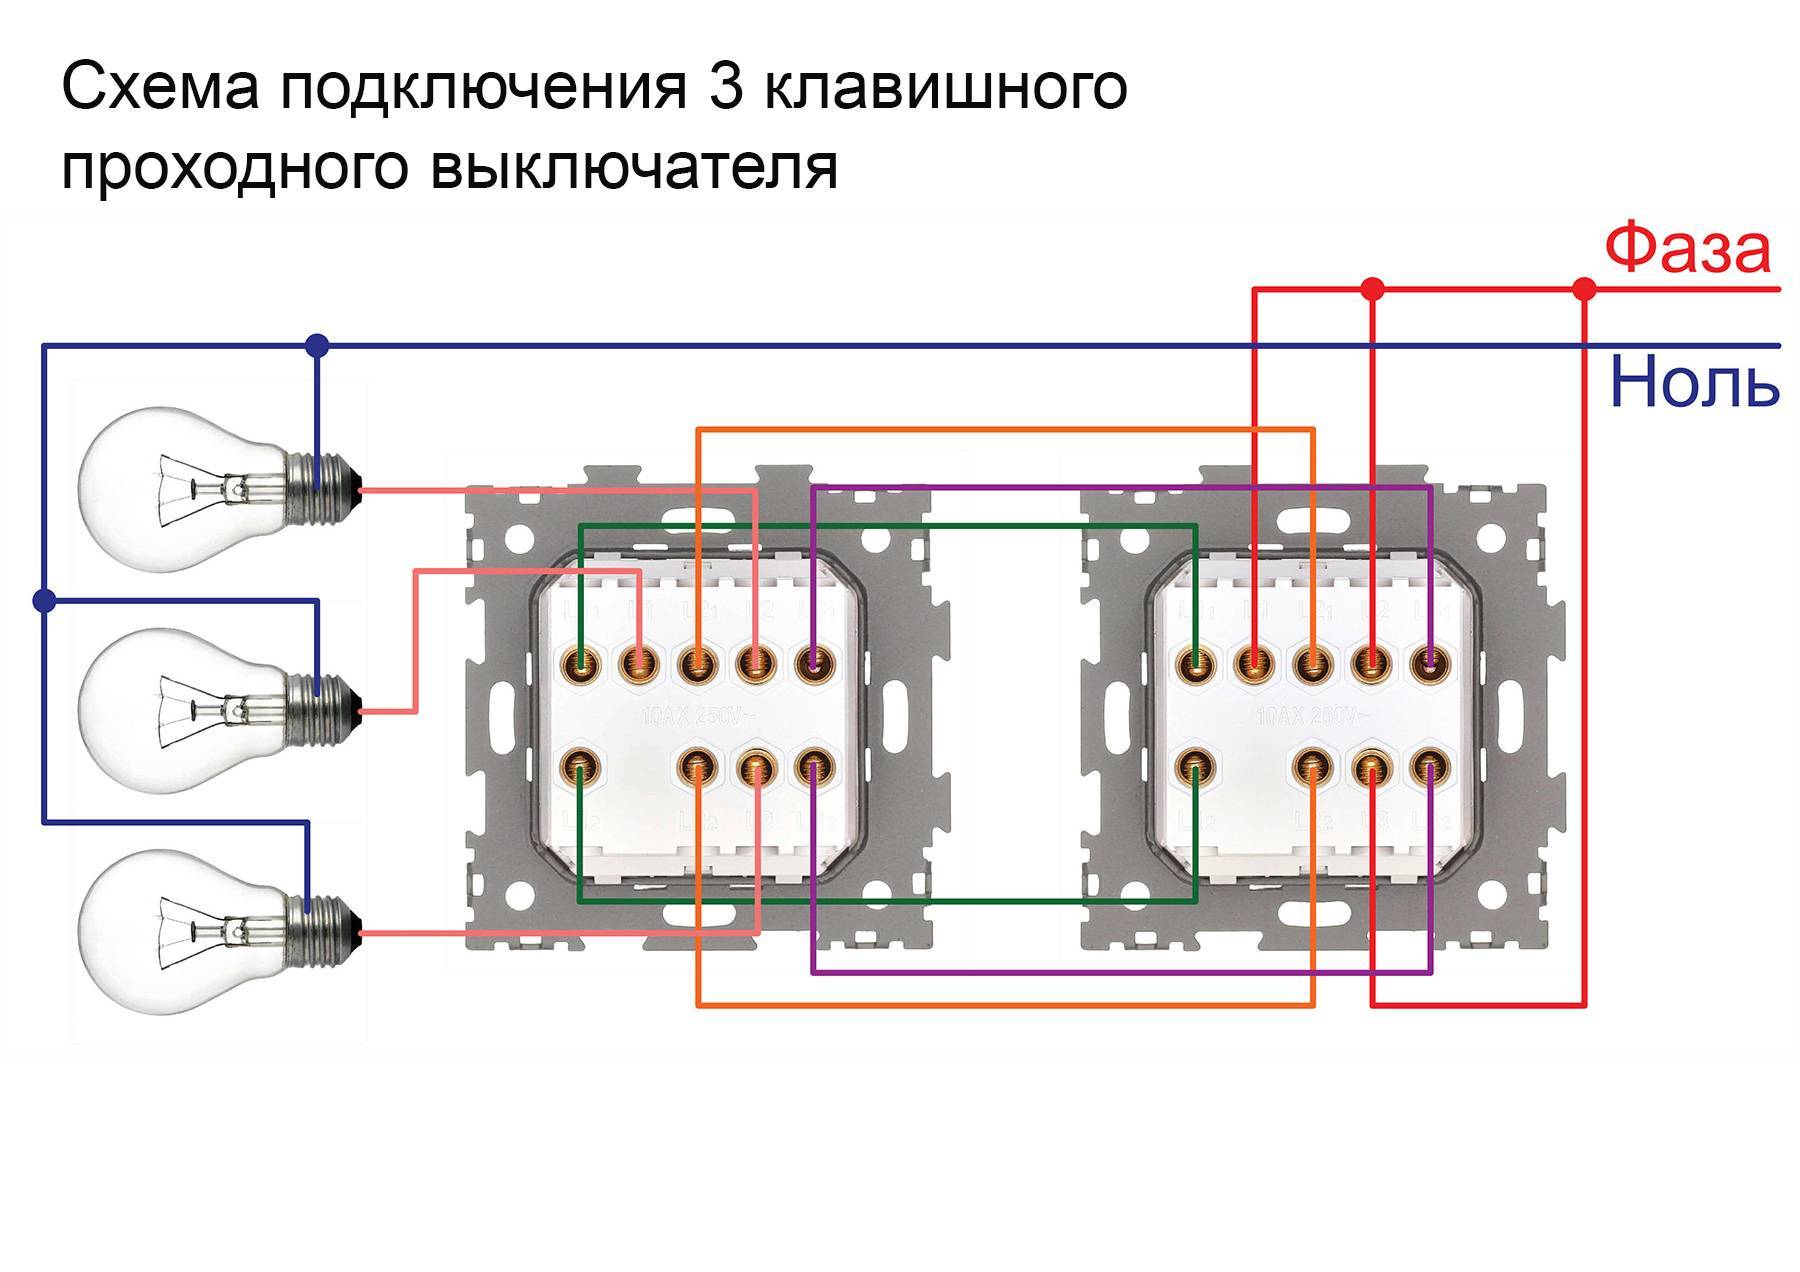 Проходной выключатель: схема подключения проходного выключателя с 2х мест и более